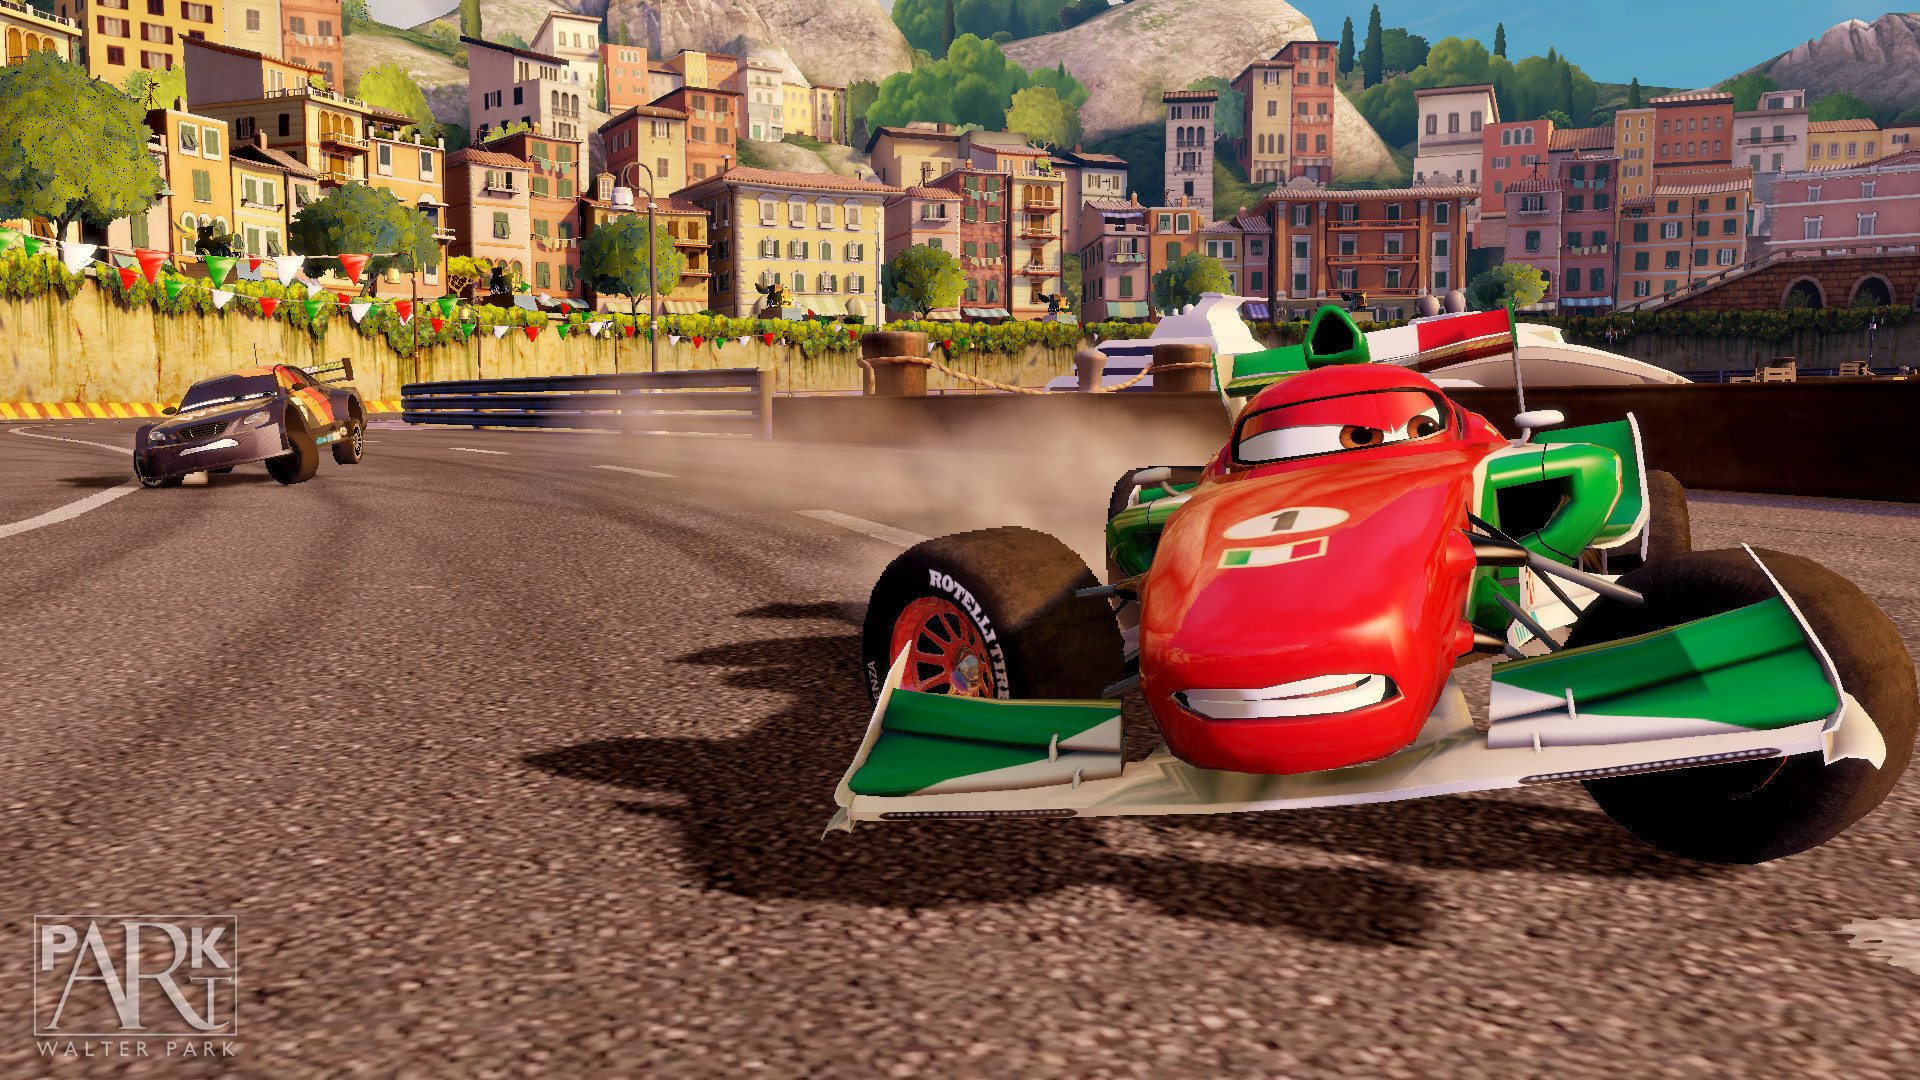 Гонки игры для мальчиков 3. Игра Disney Pixar cars 2. Cars 2 Xbox 360. Тачки / cars: the videogame. Тачки 2 хбокс 360.